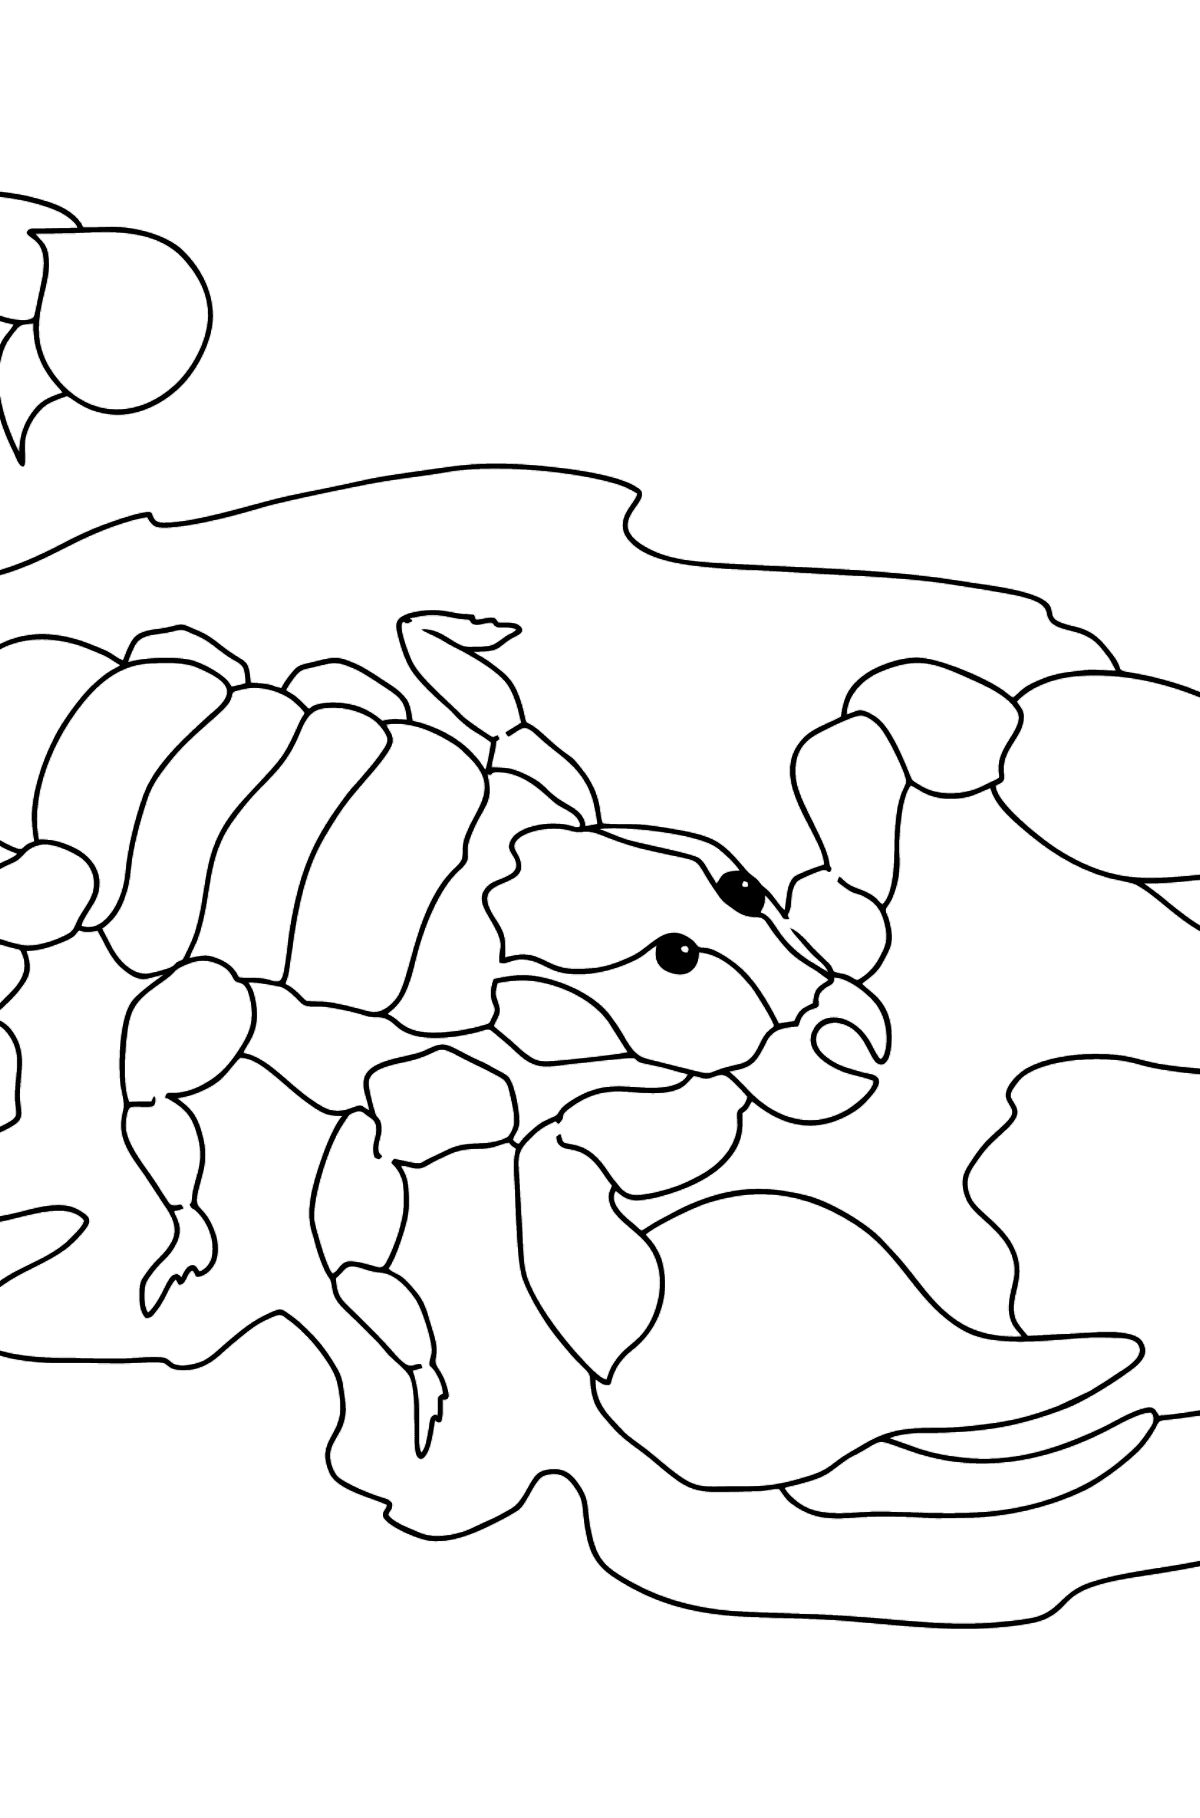 Desen de colorat scorpion negru (dificil) - Desene de colorat pentru copii